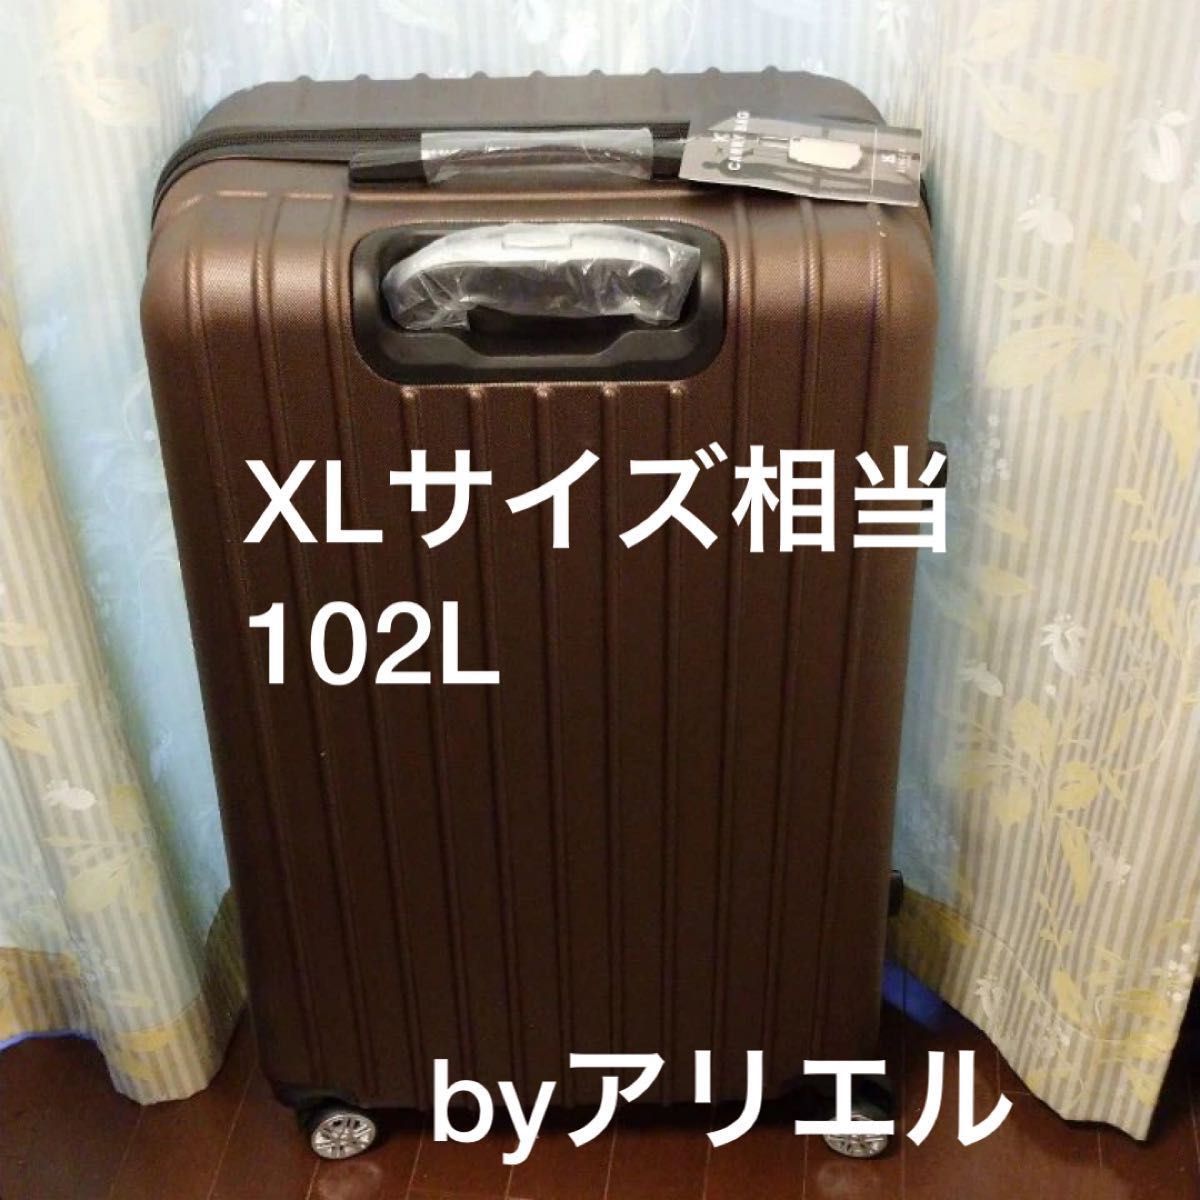 「大容量102L」新品 スーツケース Lサイズ XLサイズ相当 コーヒー  大容量 102L キャリーバッグ